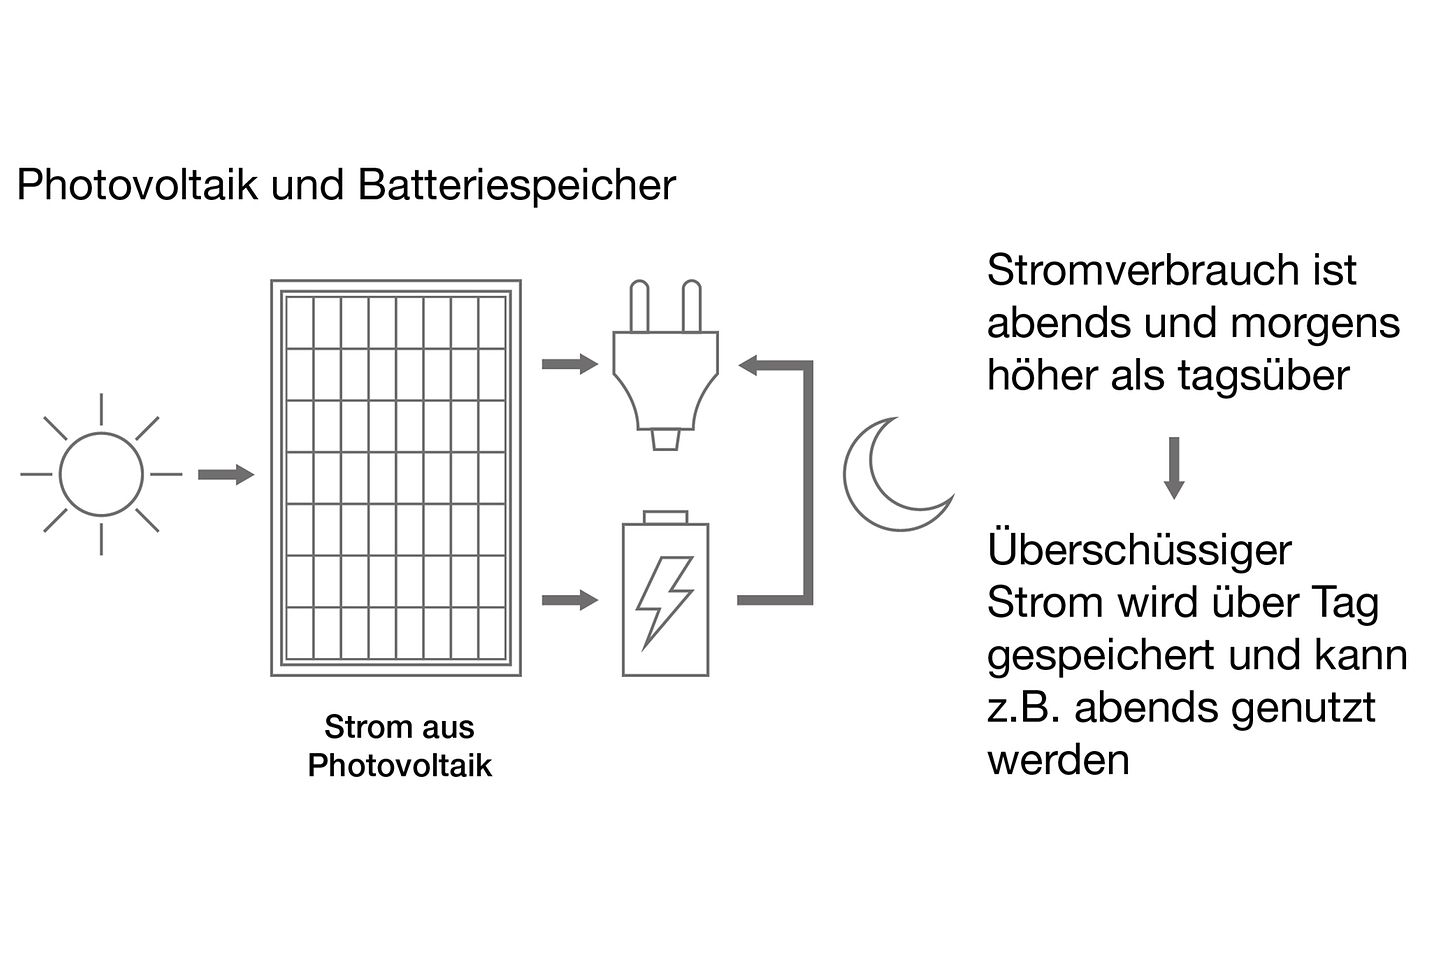 grafiken_buderus_photovoltaik_und_batteriespeicher